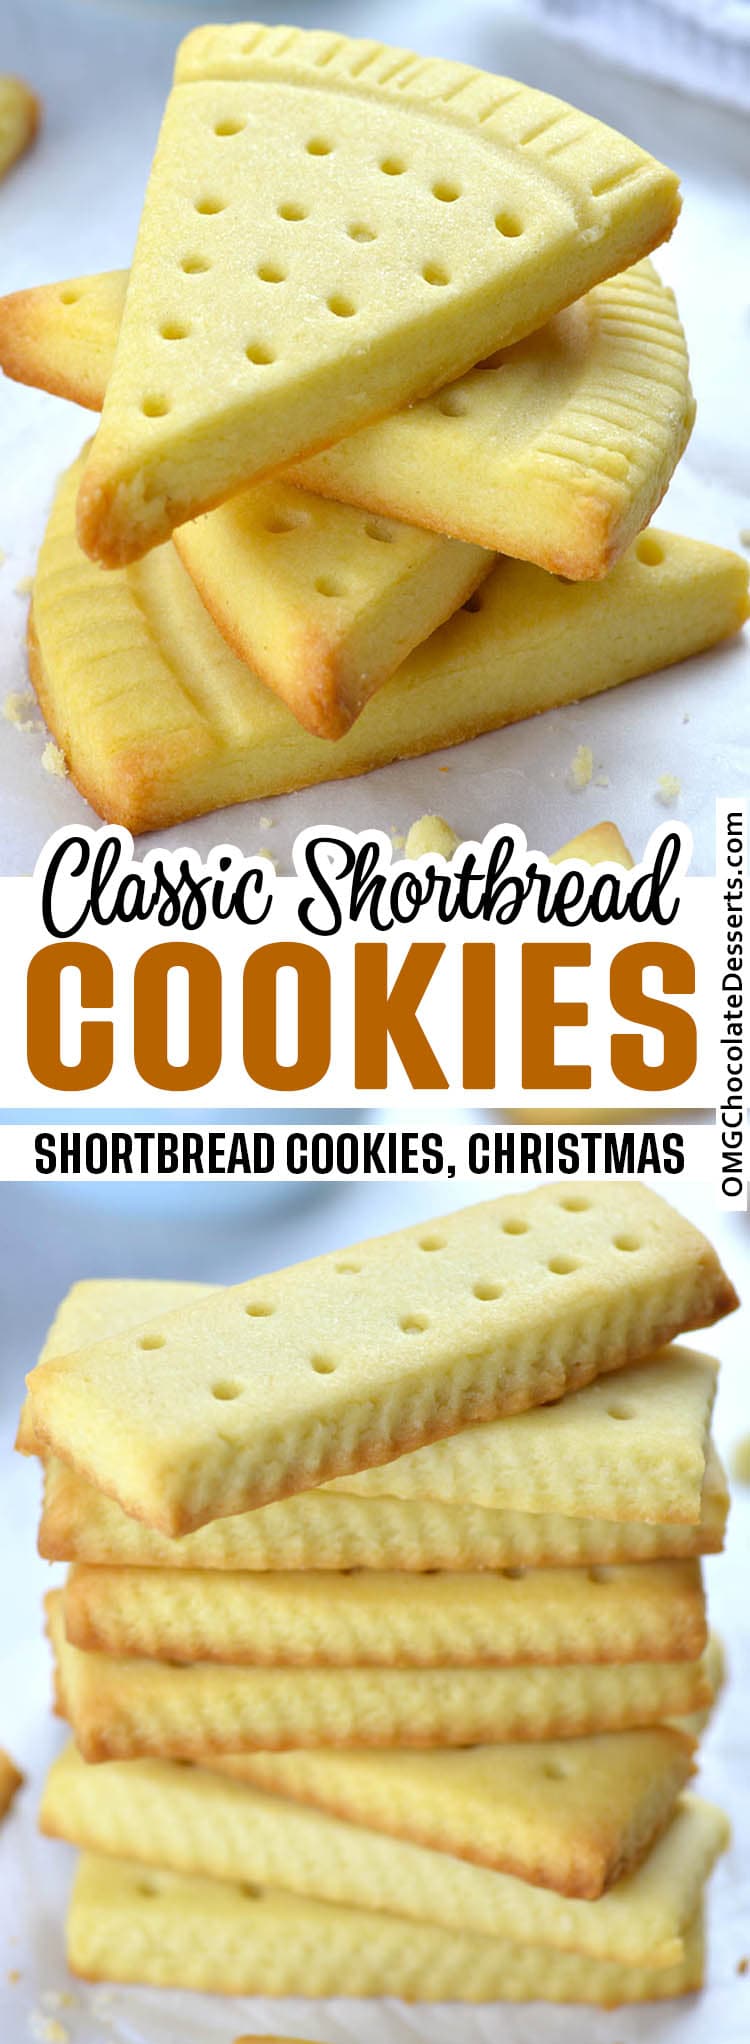 https://omgchocolatedesserts.com/wp-content/uploads/2018/08/Classic-Shortbread-Cookies.jpg